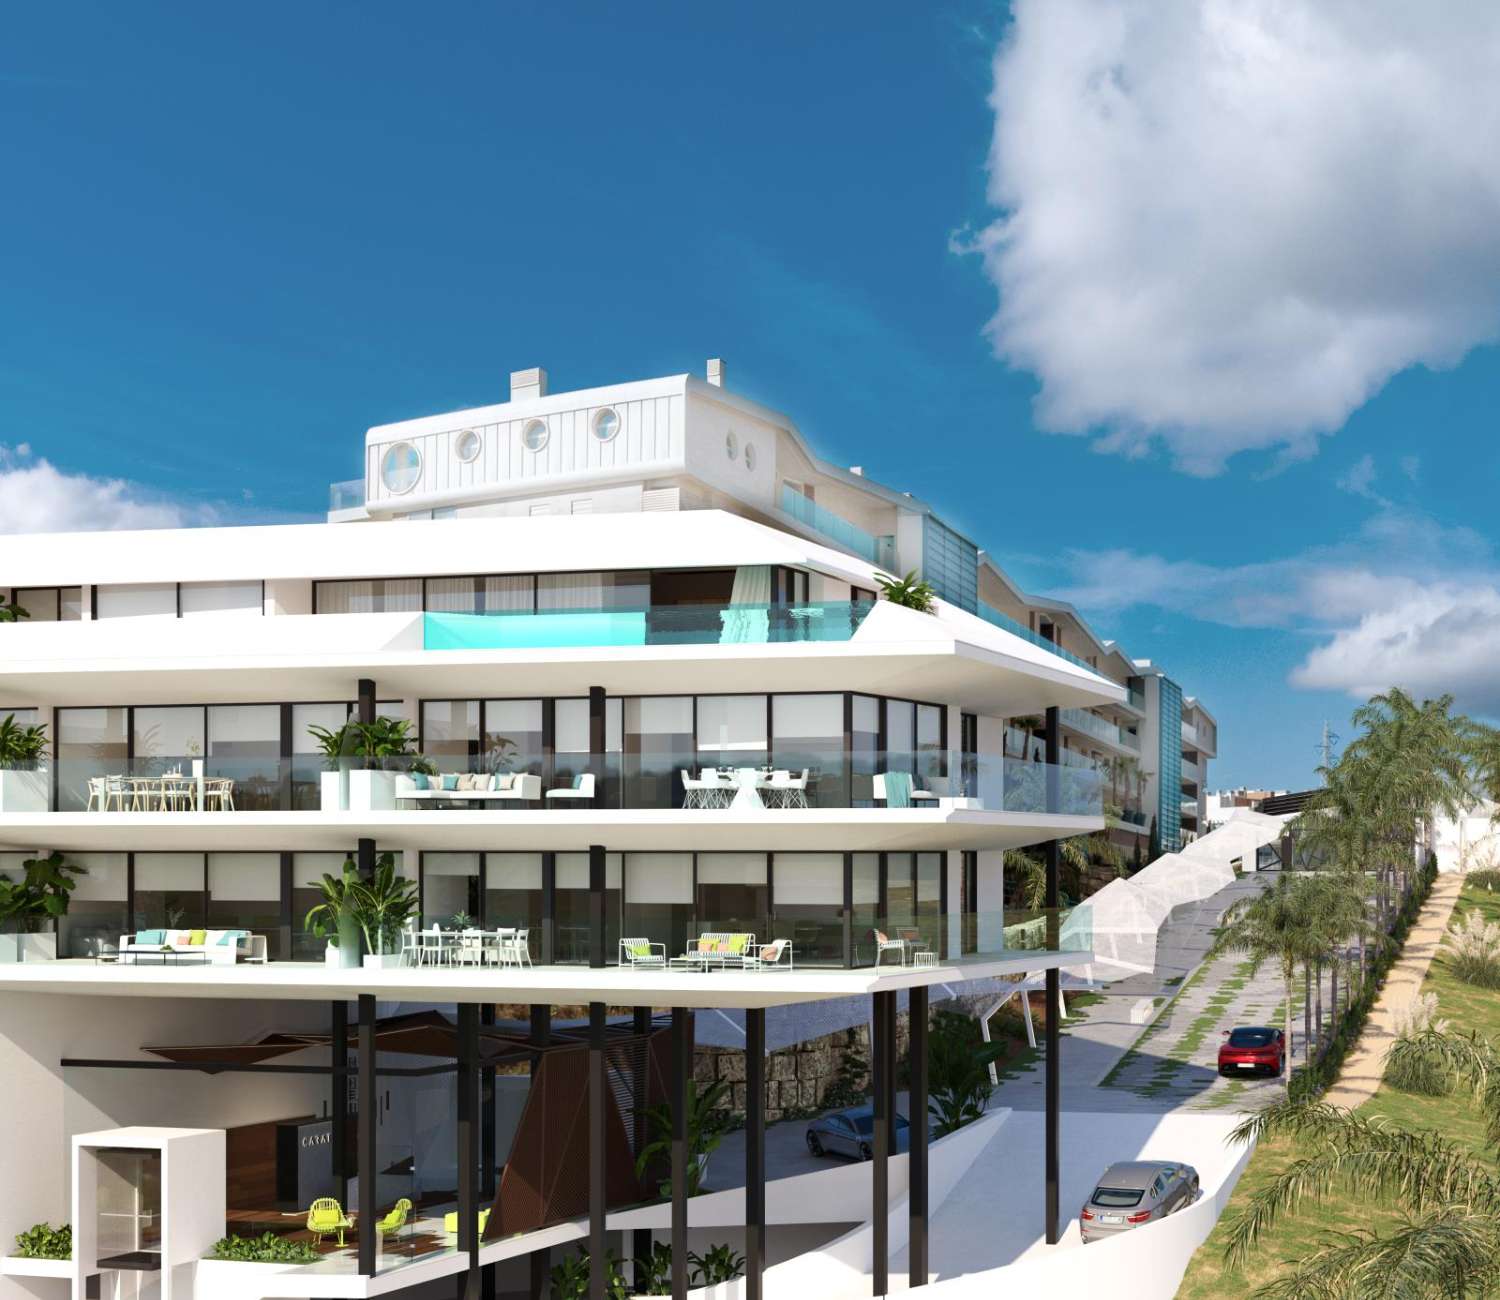 Lejligheder og huse til salg NYBYGGERI bygherre i El Higuerón spektakulær havudsigt ved siden af stranden